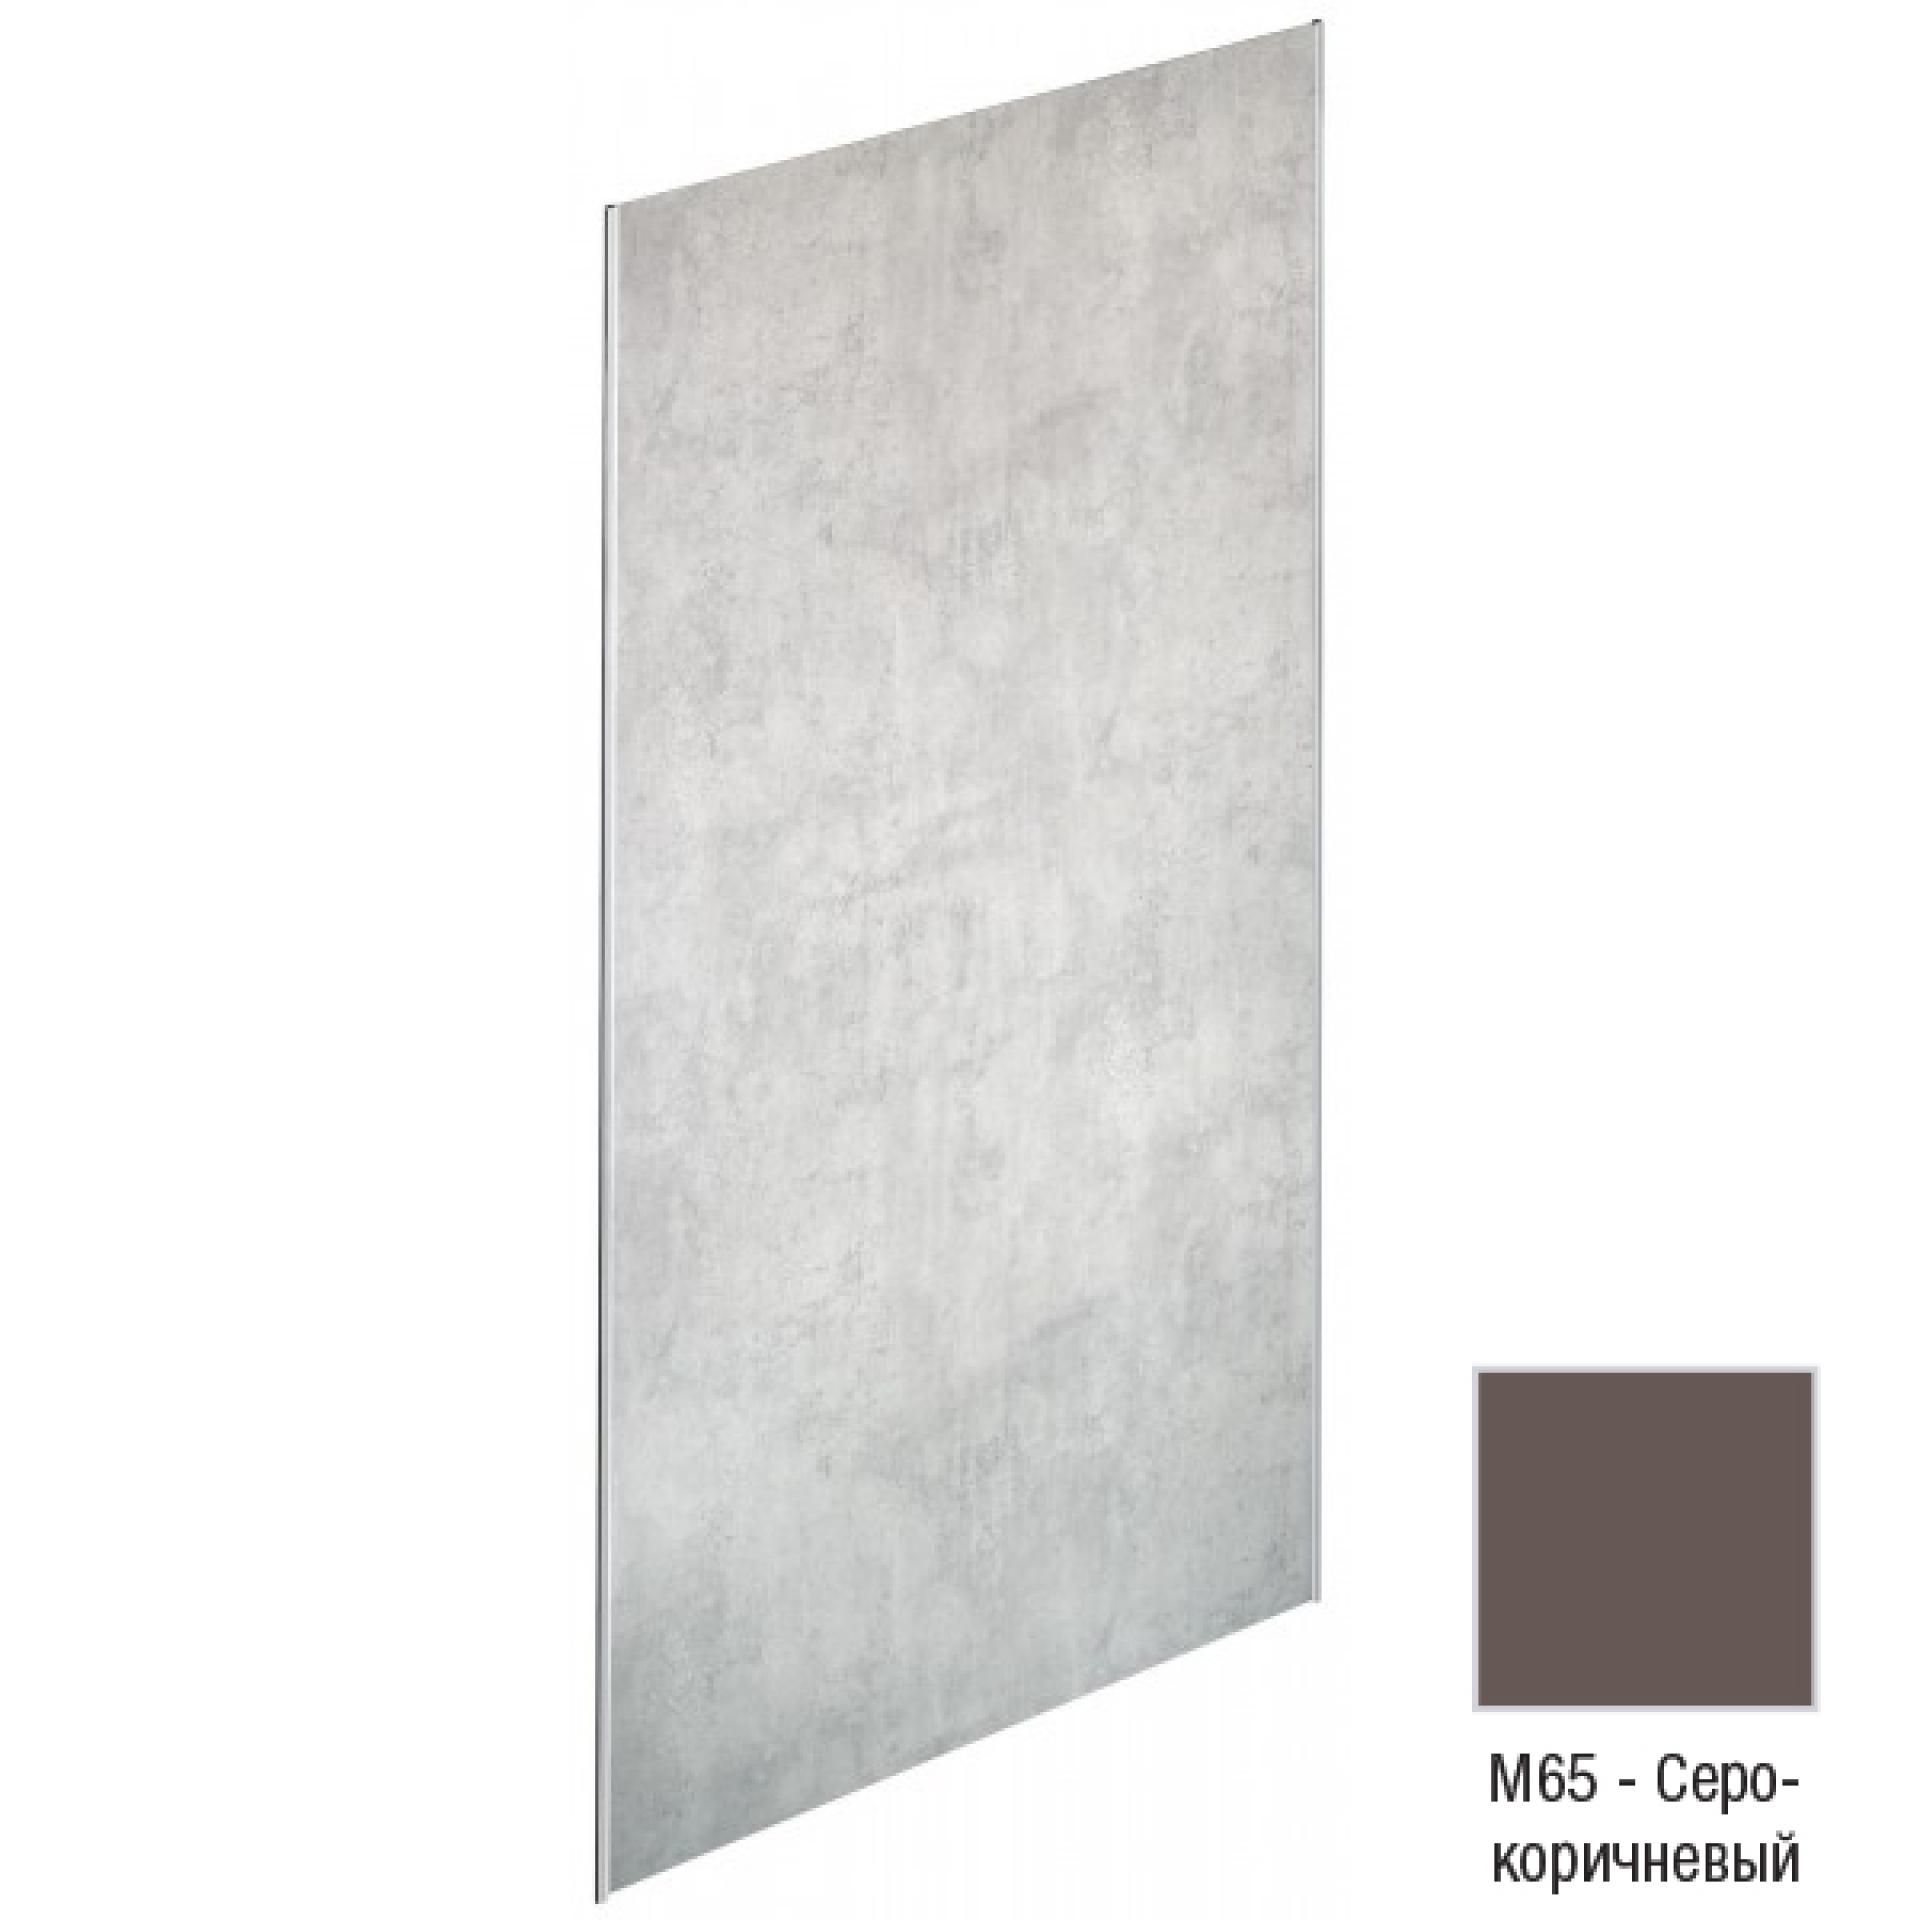 Декоративная панель для душевого пространства Jacob Delafon Panolux E63030-M65, серо-коричневый